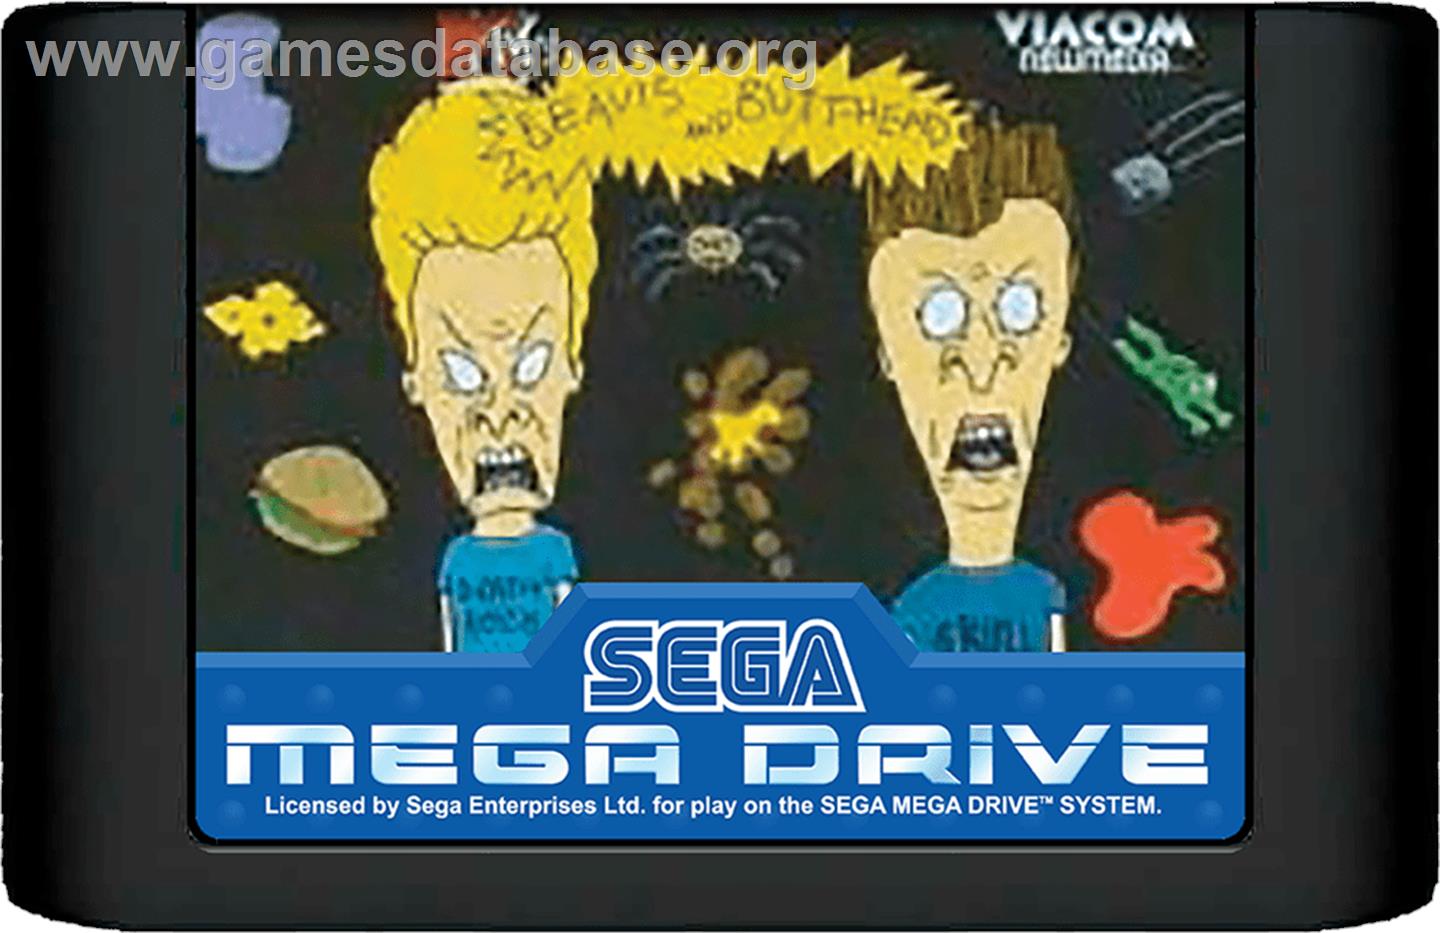 Beavis and Butt-head - Sega Genesis - Artwork - Cartridge